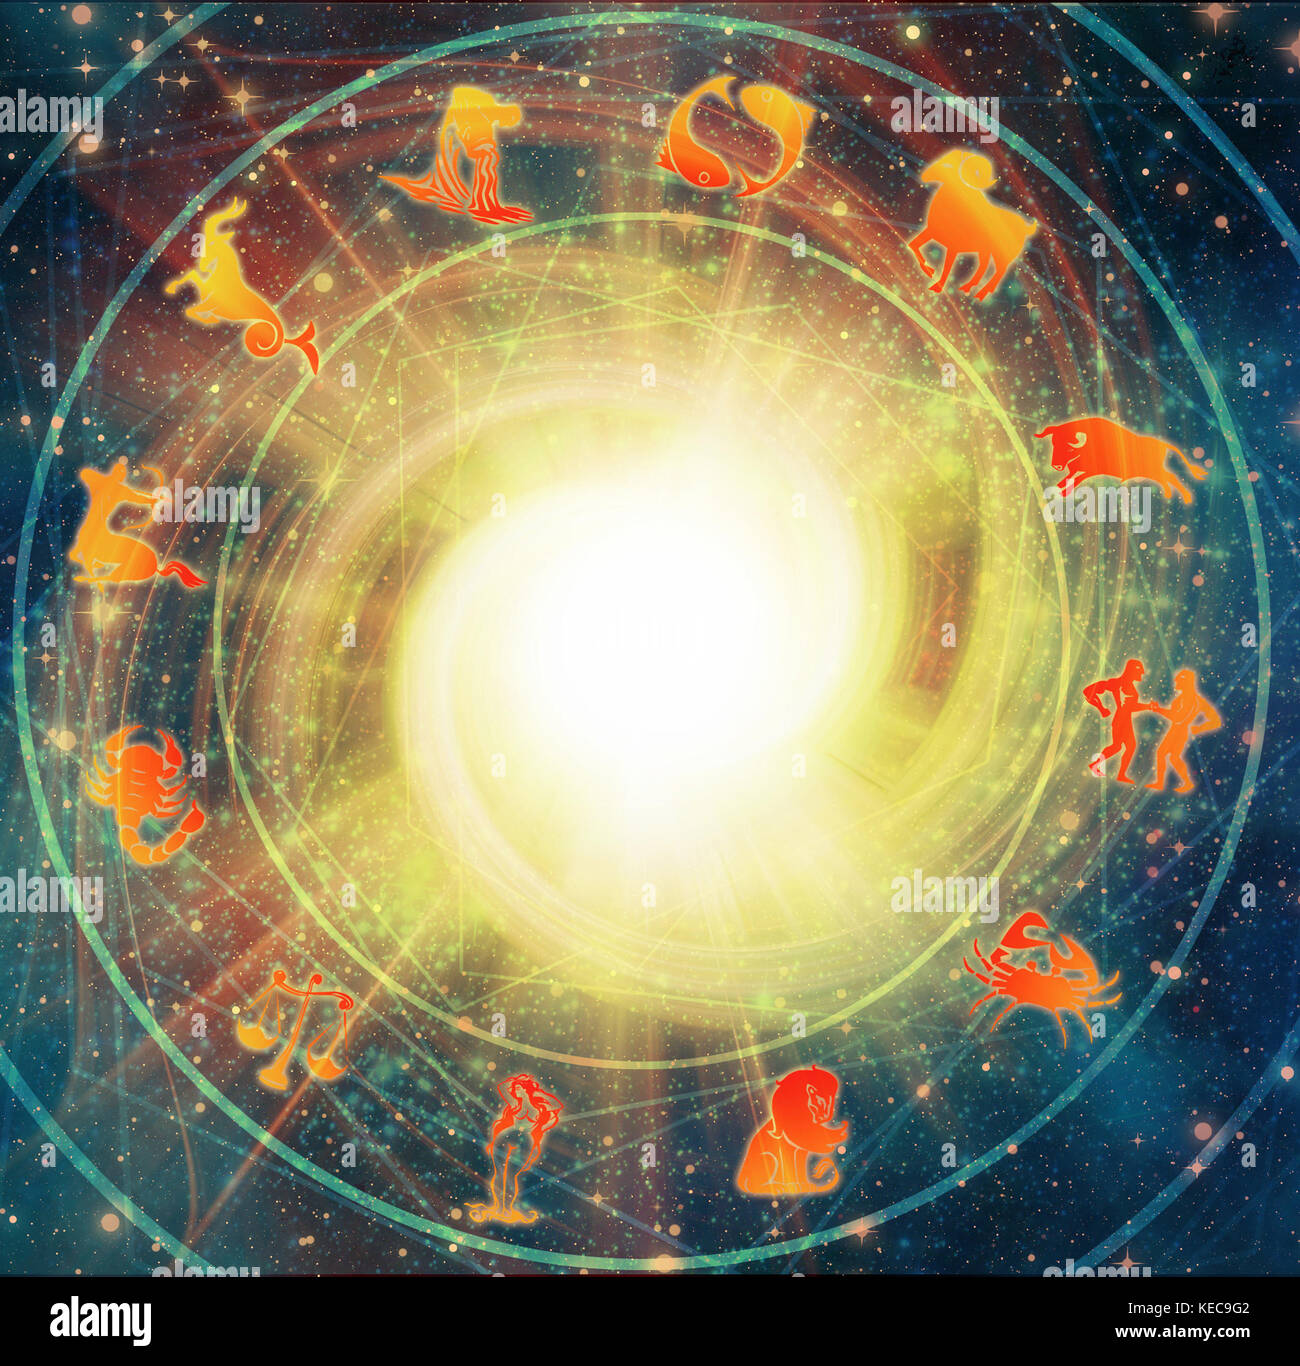 Grafico di astrologia con tutti i segni dello zodiaco Foto Stock